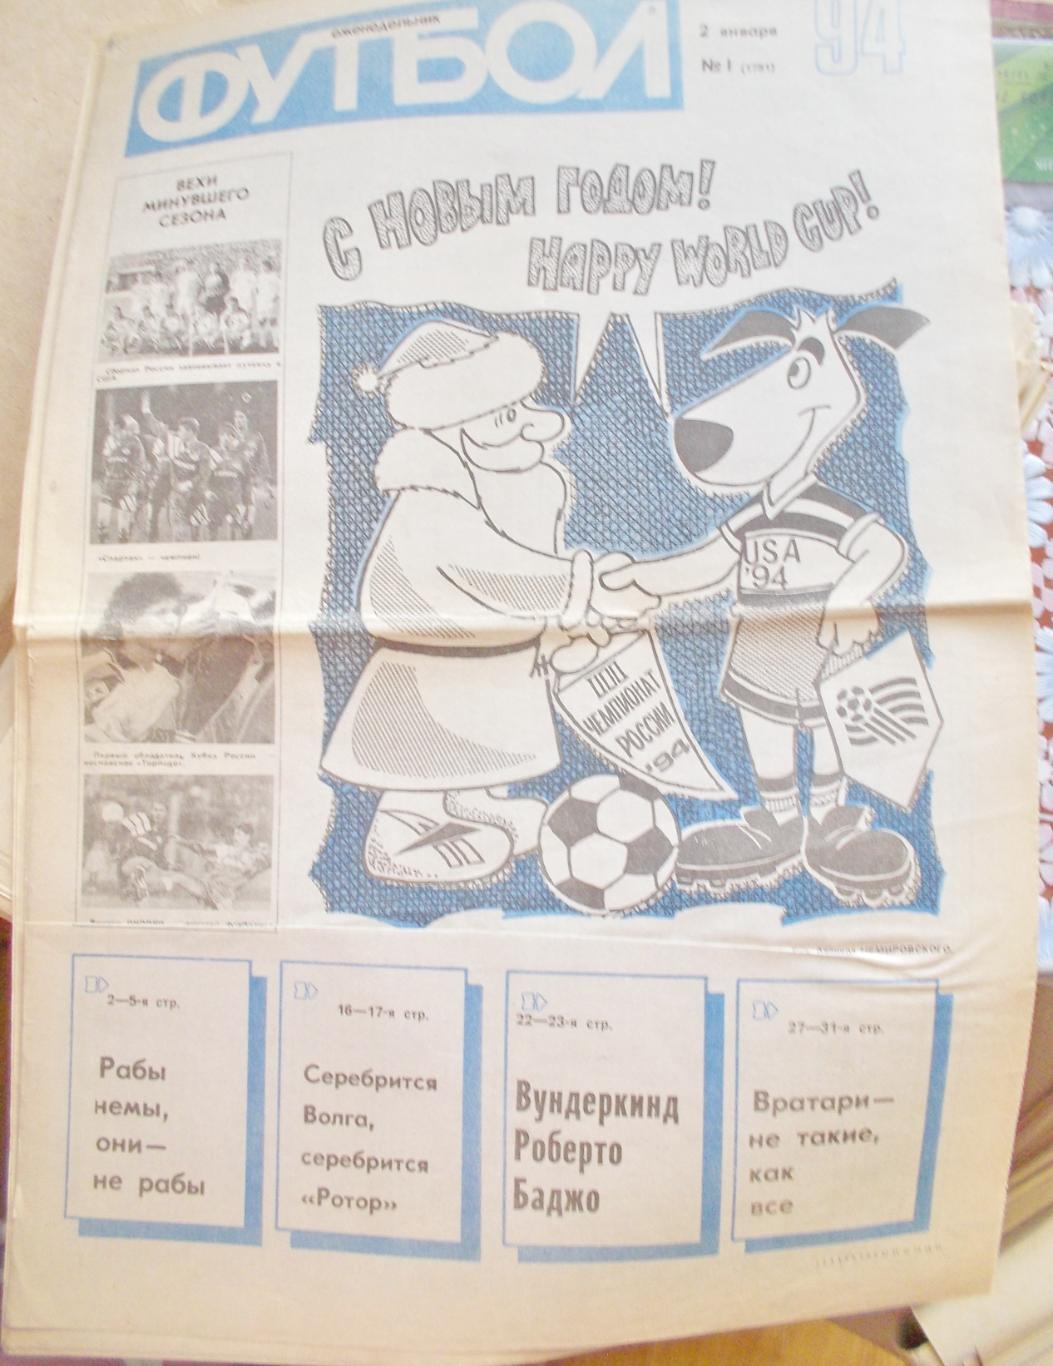 Еженедельник Футбол-Хоккей, полный комплект, 1994 год.